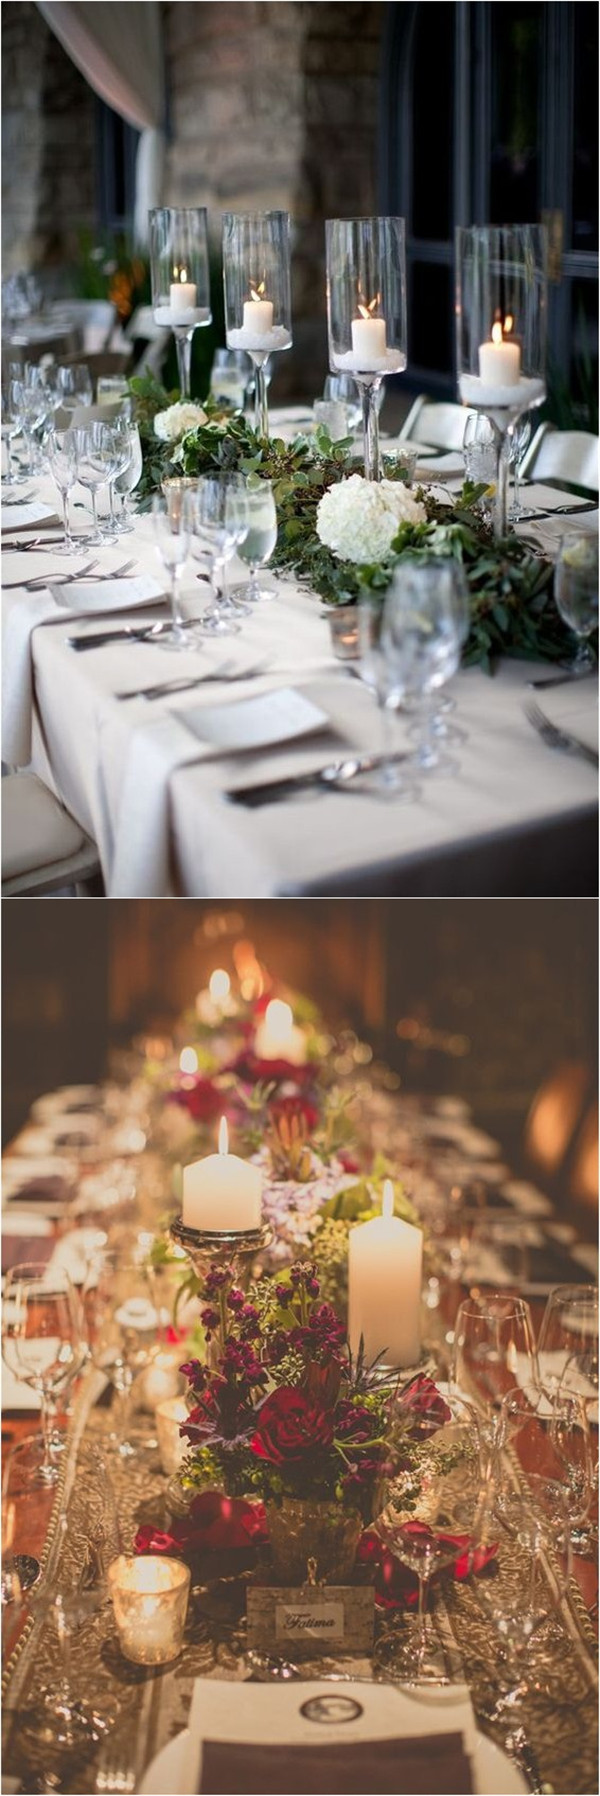 Christmas Wedding Table setting